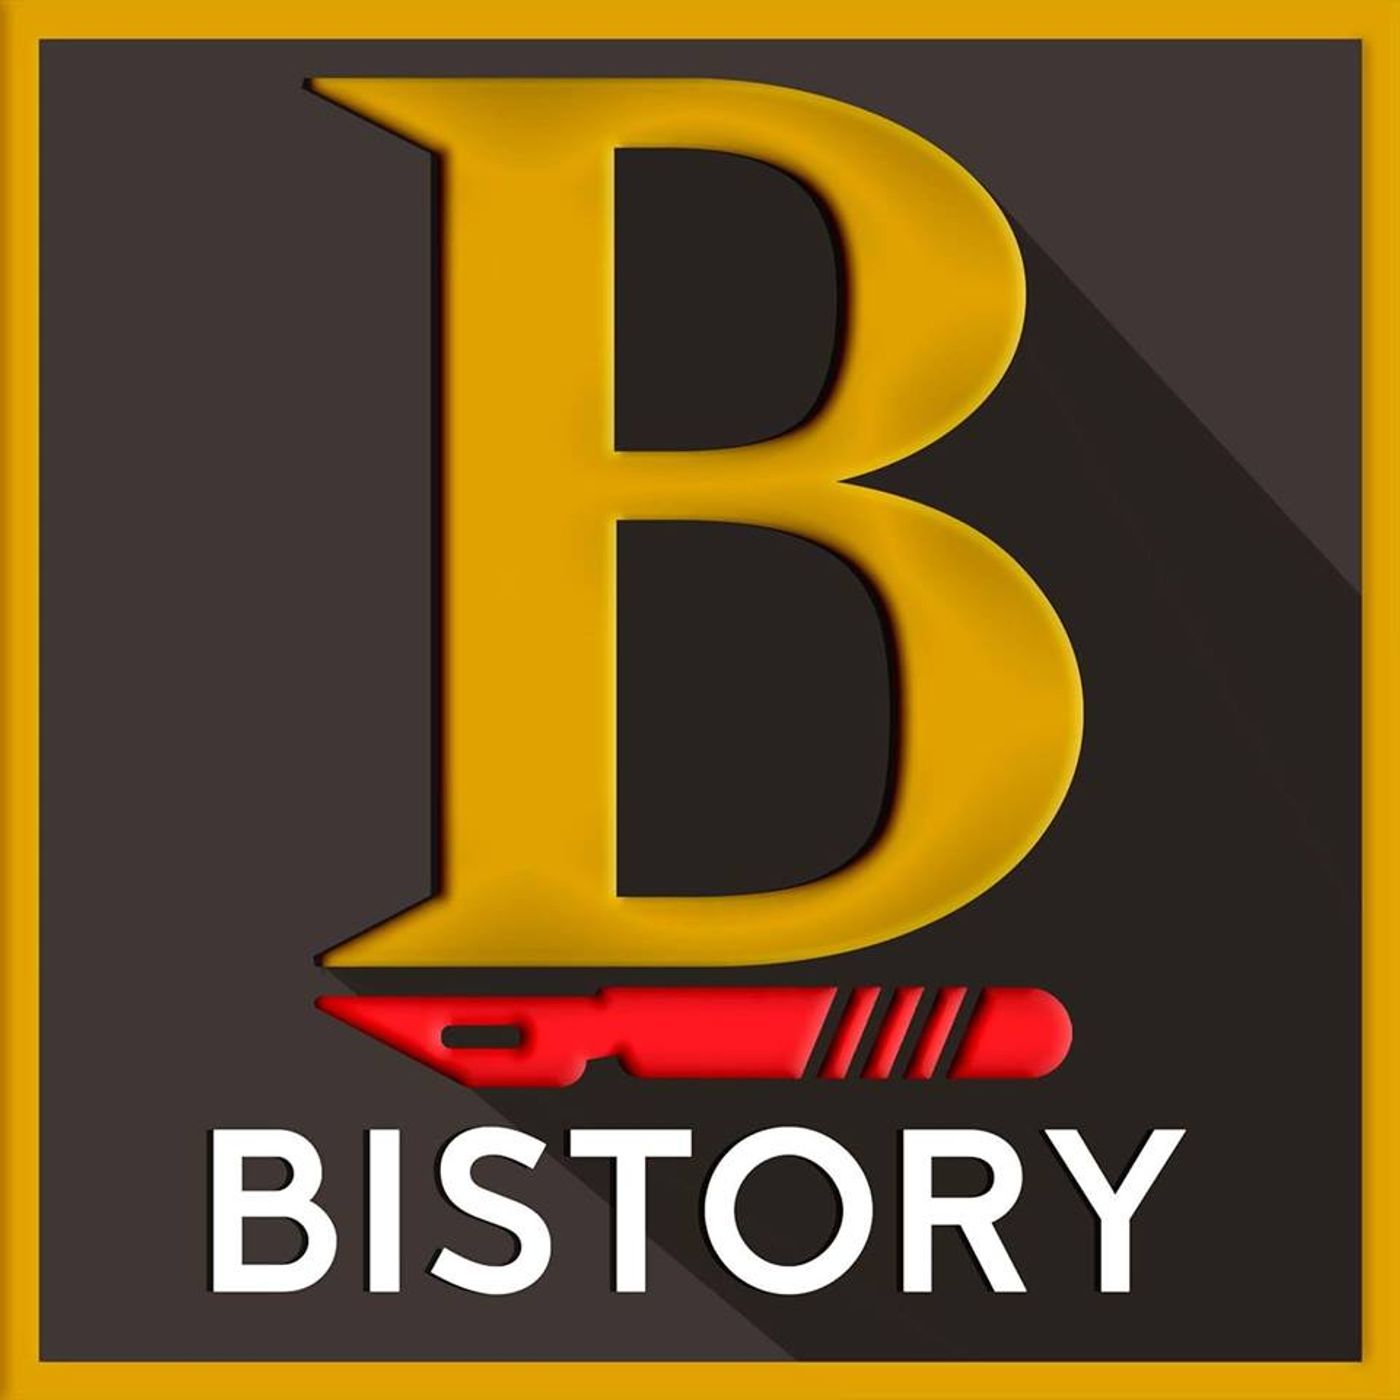 BISTORY – Storie dalla Storia